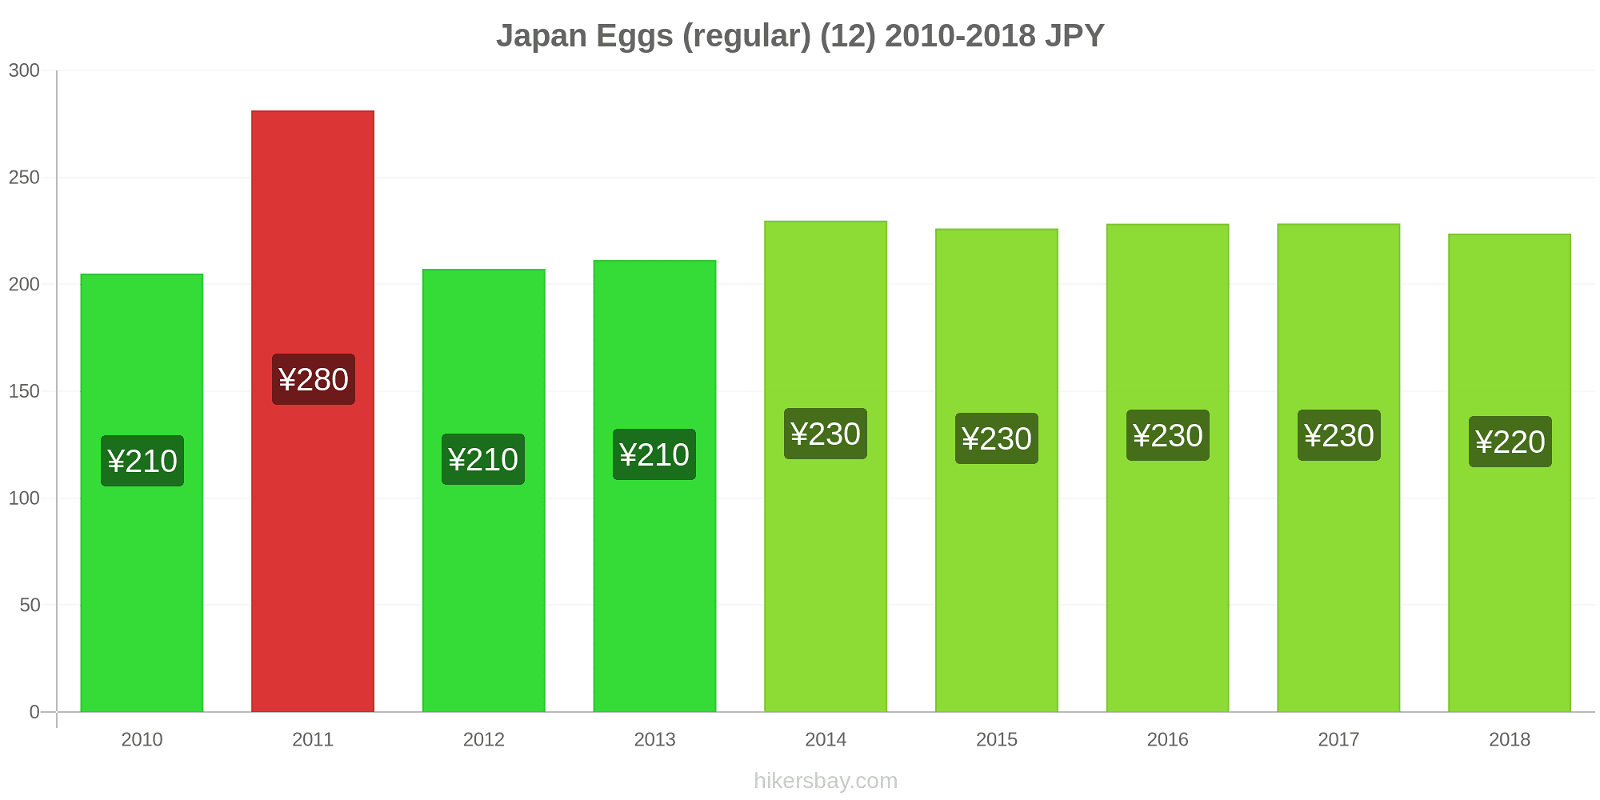 Japan price changes Eggs (regular) (12) hikersbay.com